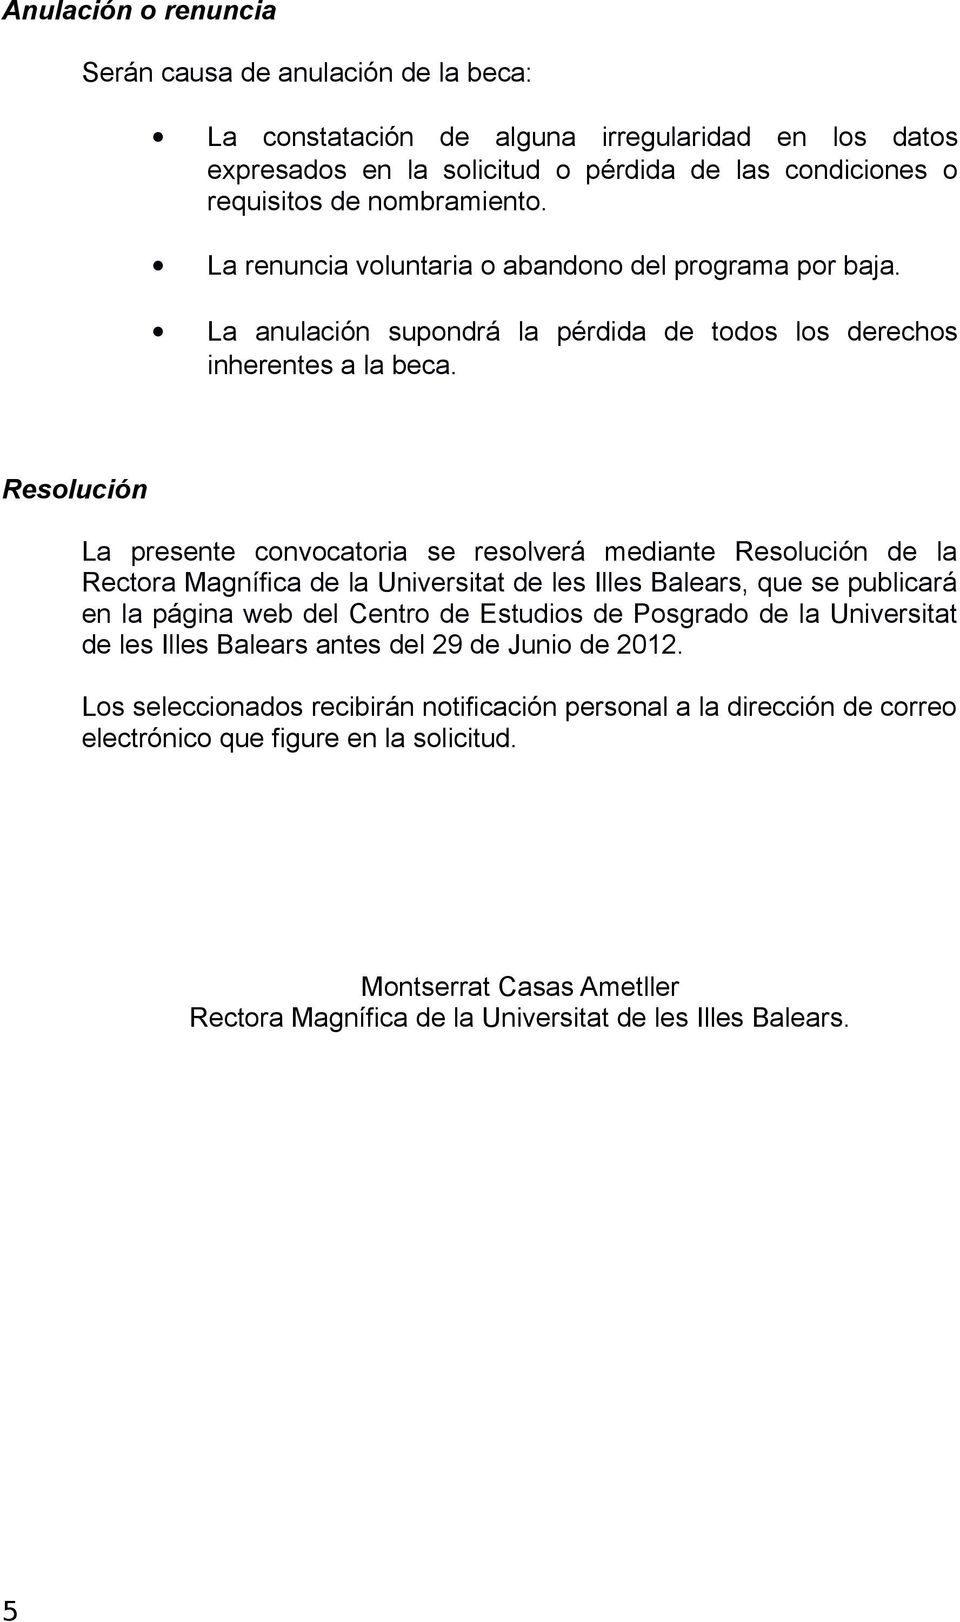 Resolución La presente convocatoria se resolverá mediante Resolución de la Rectora Magnífica de la Universitat de les Illes Balears, que se publicará en la página web del Centro de Estudios de